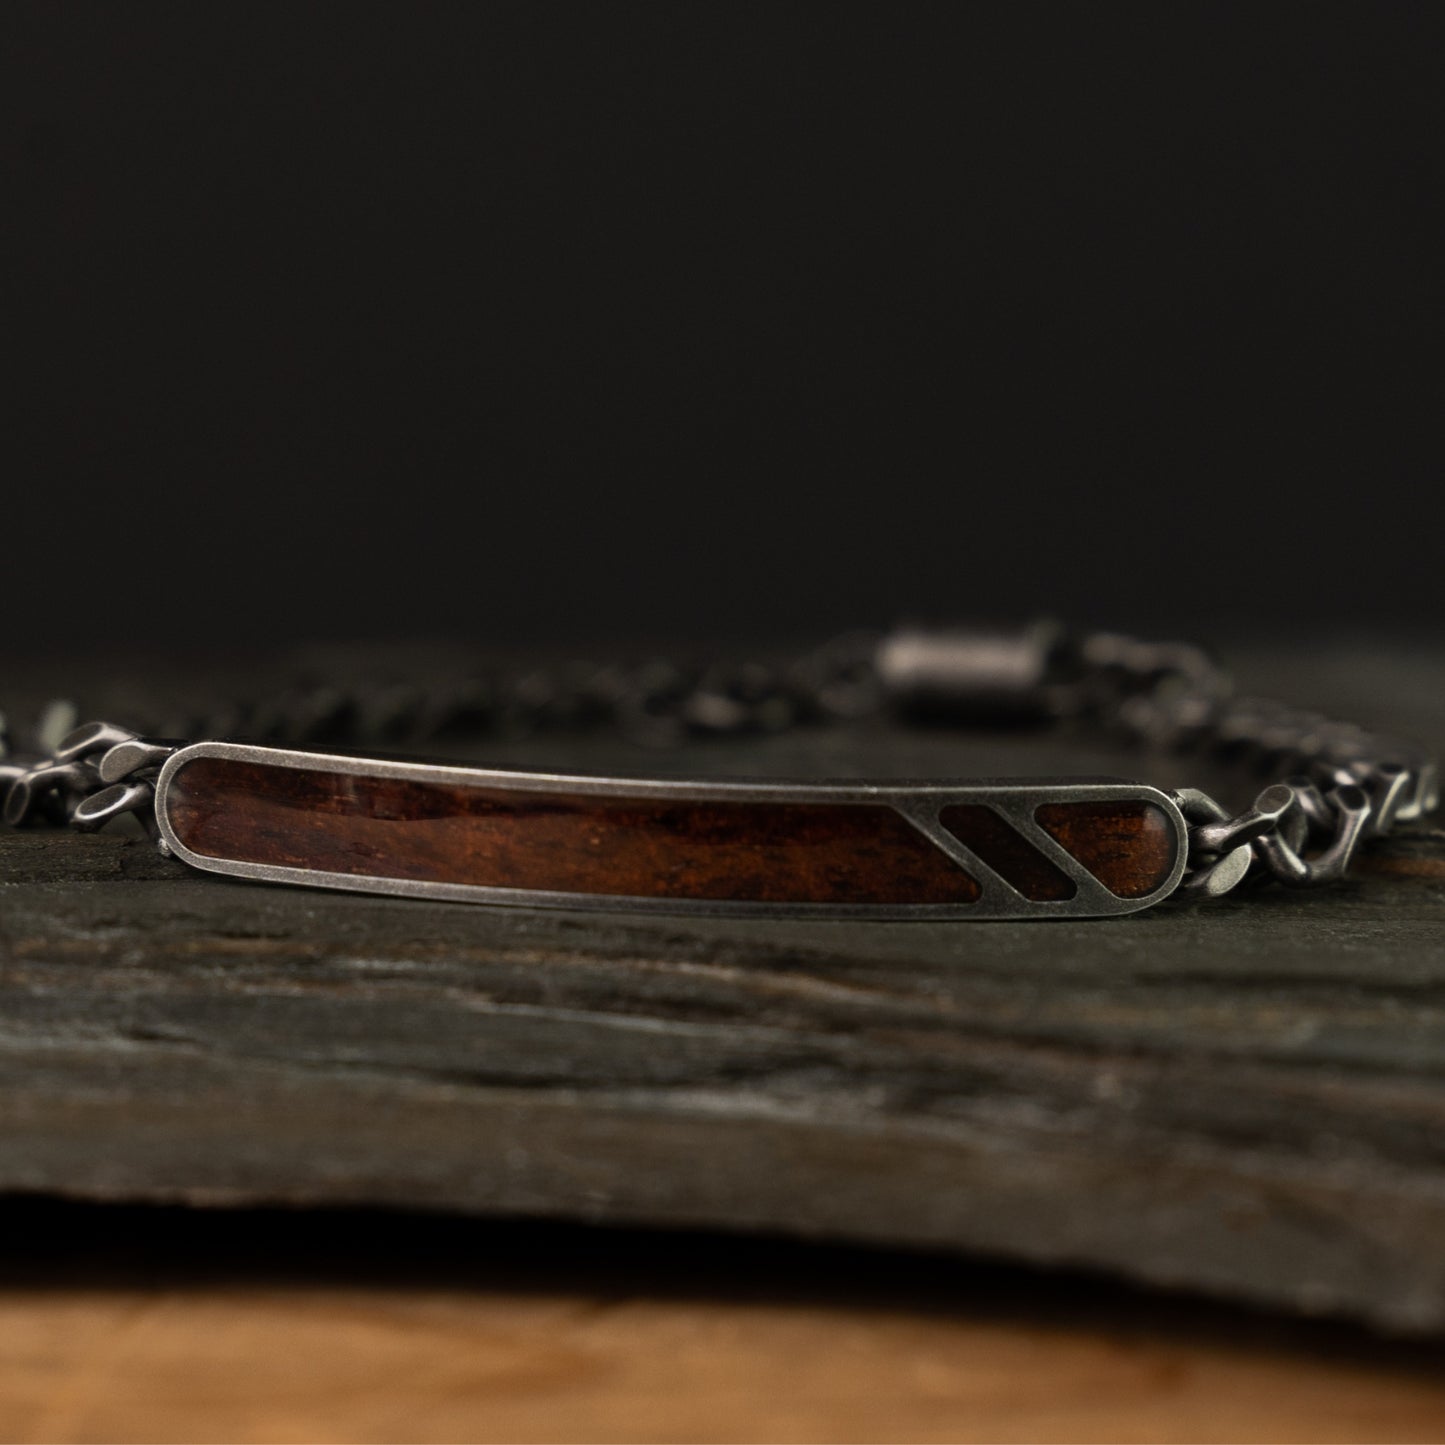 Koa Stonewashed Curb Bracelet